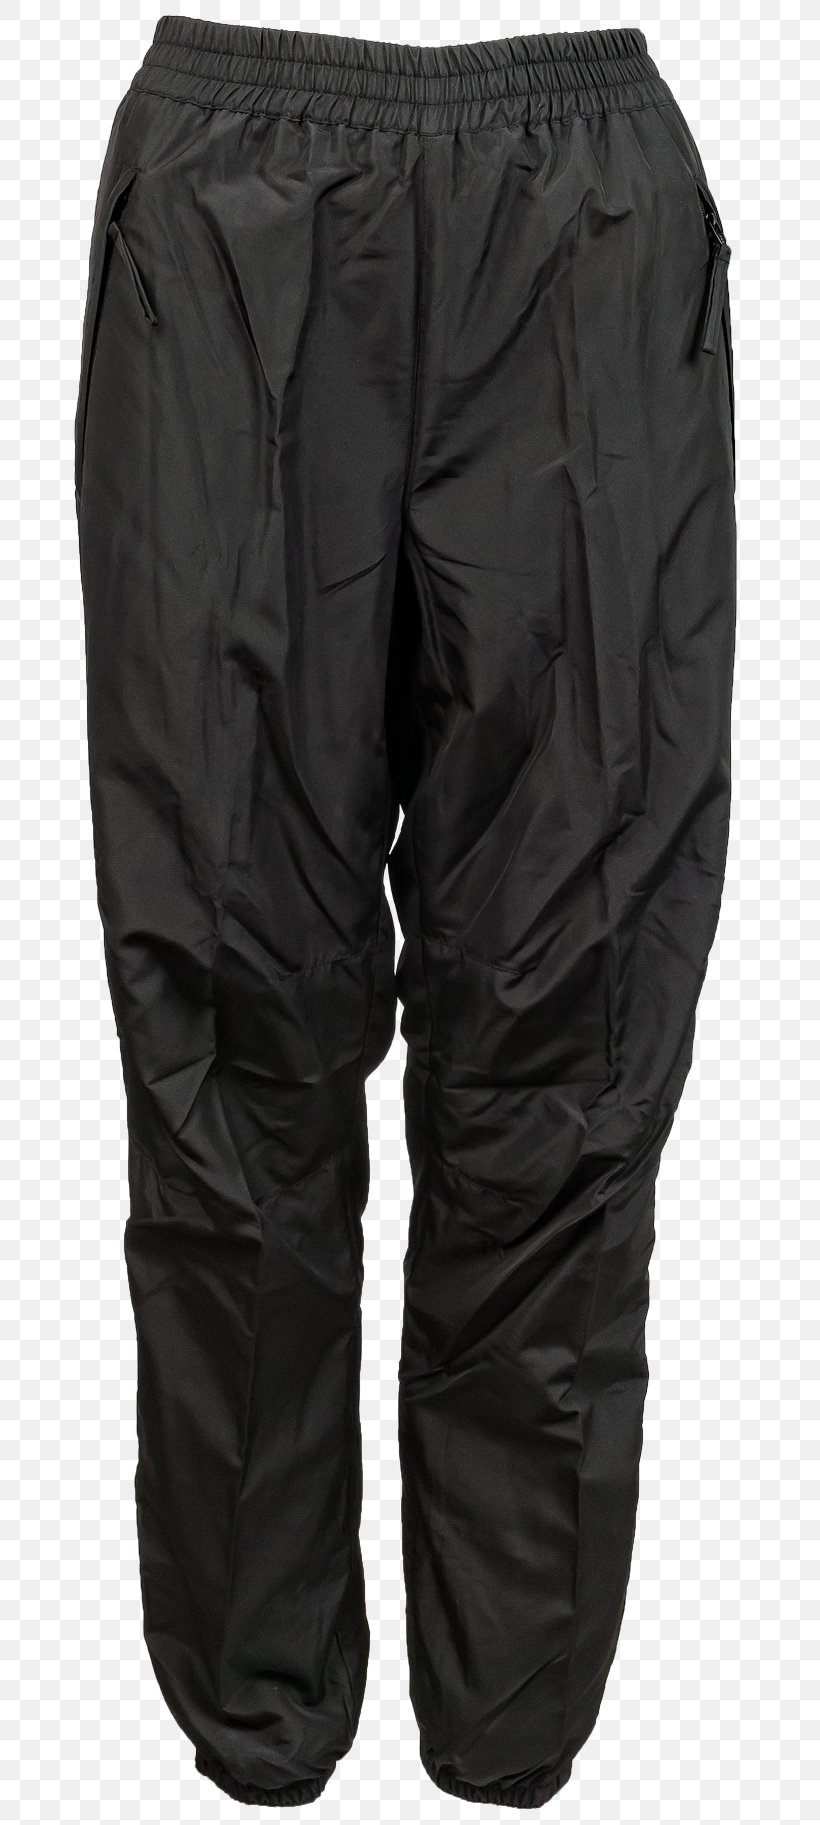 Rain Pants Clothing Jacket Boyshorts, PNG, 700x1825px, Pants, Boyshorts, Clothing, Glove, Jacket Download Free